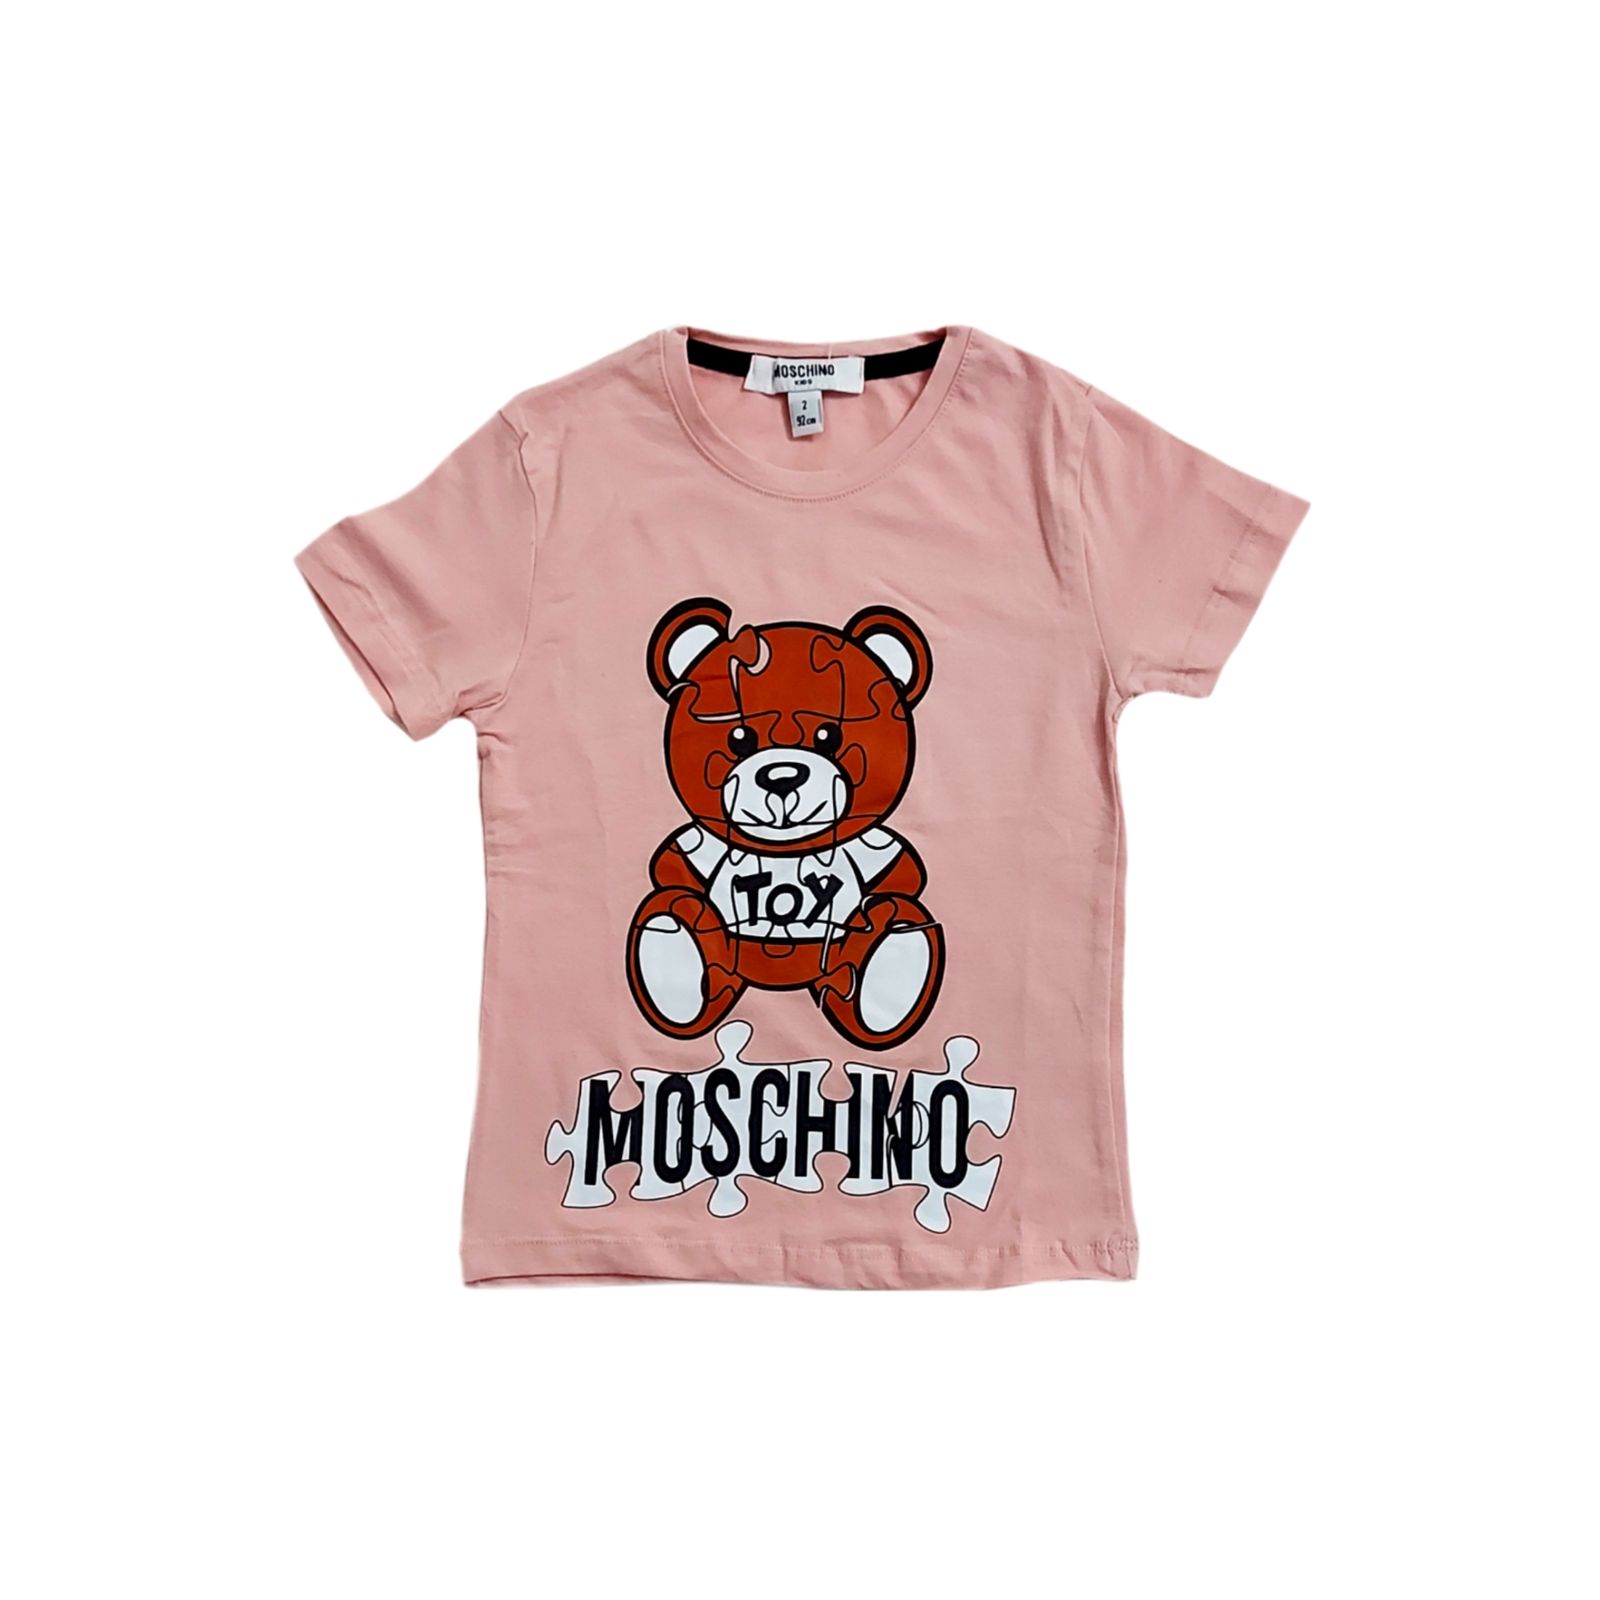 ست تی شرت و شلوارک دخترانه ماسکینو طرح خرس کد 0336 -  - 2